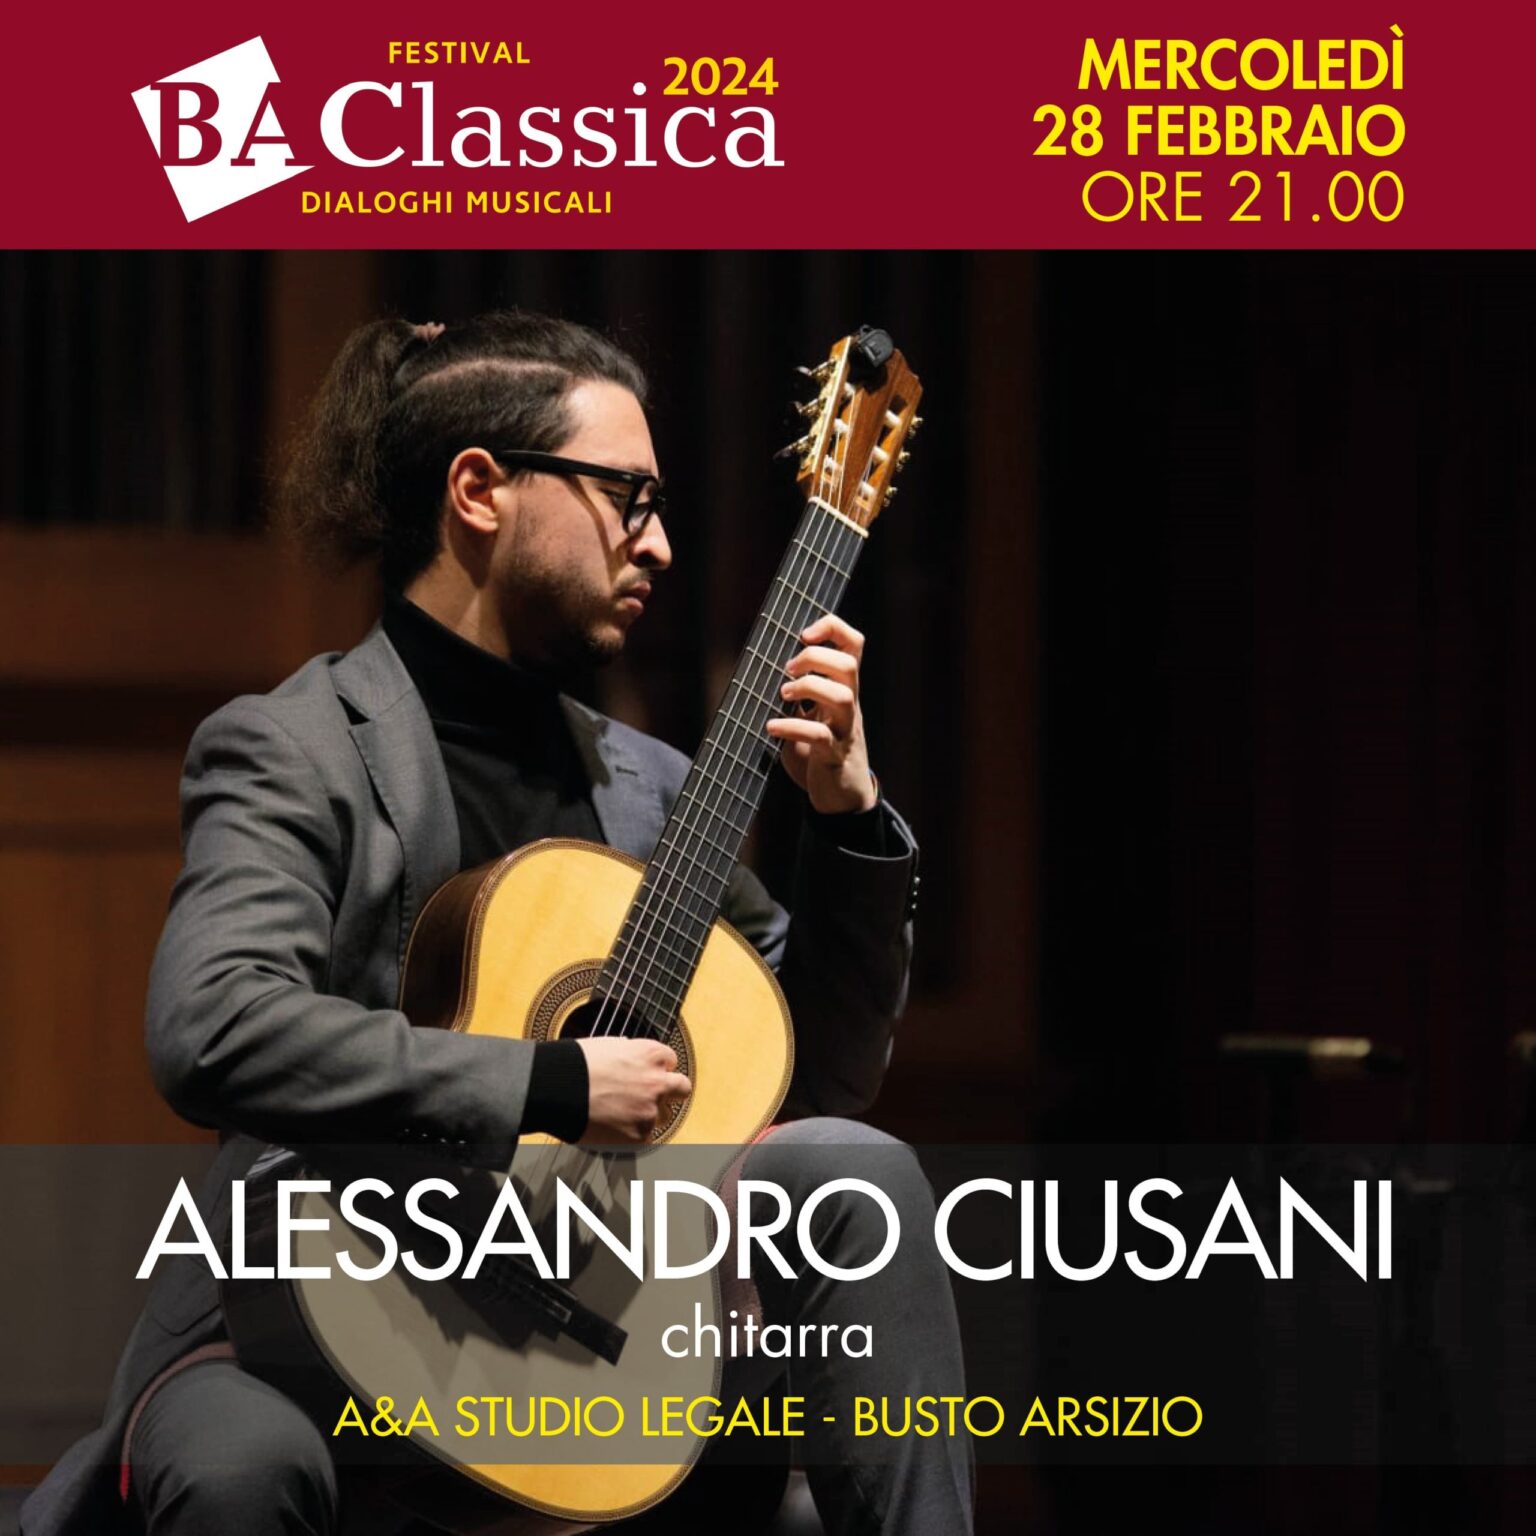 Alessandro Ciusani in concerto stasera al Festival BA Classica Dialoghi Musicali